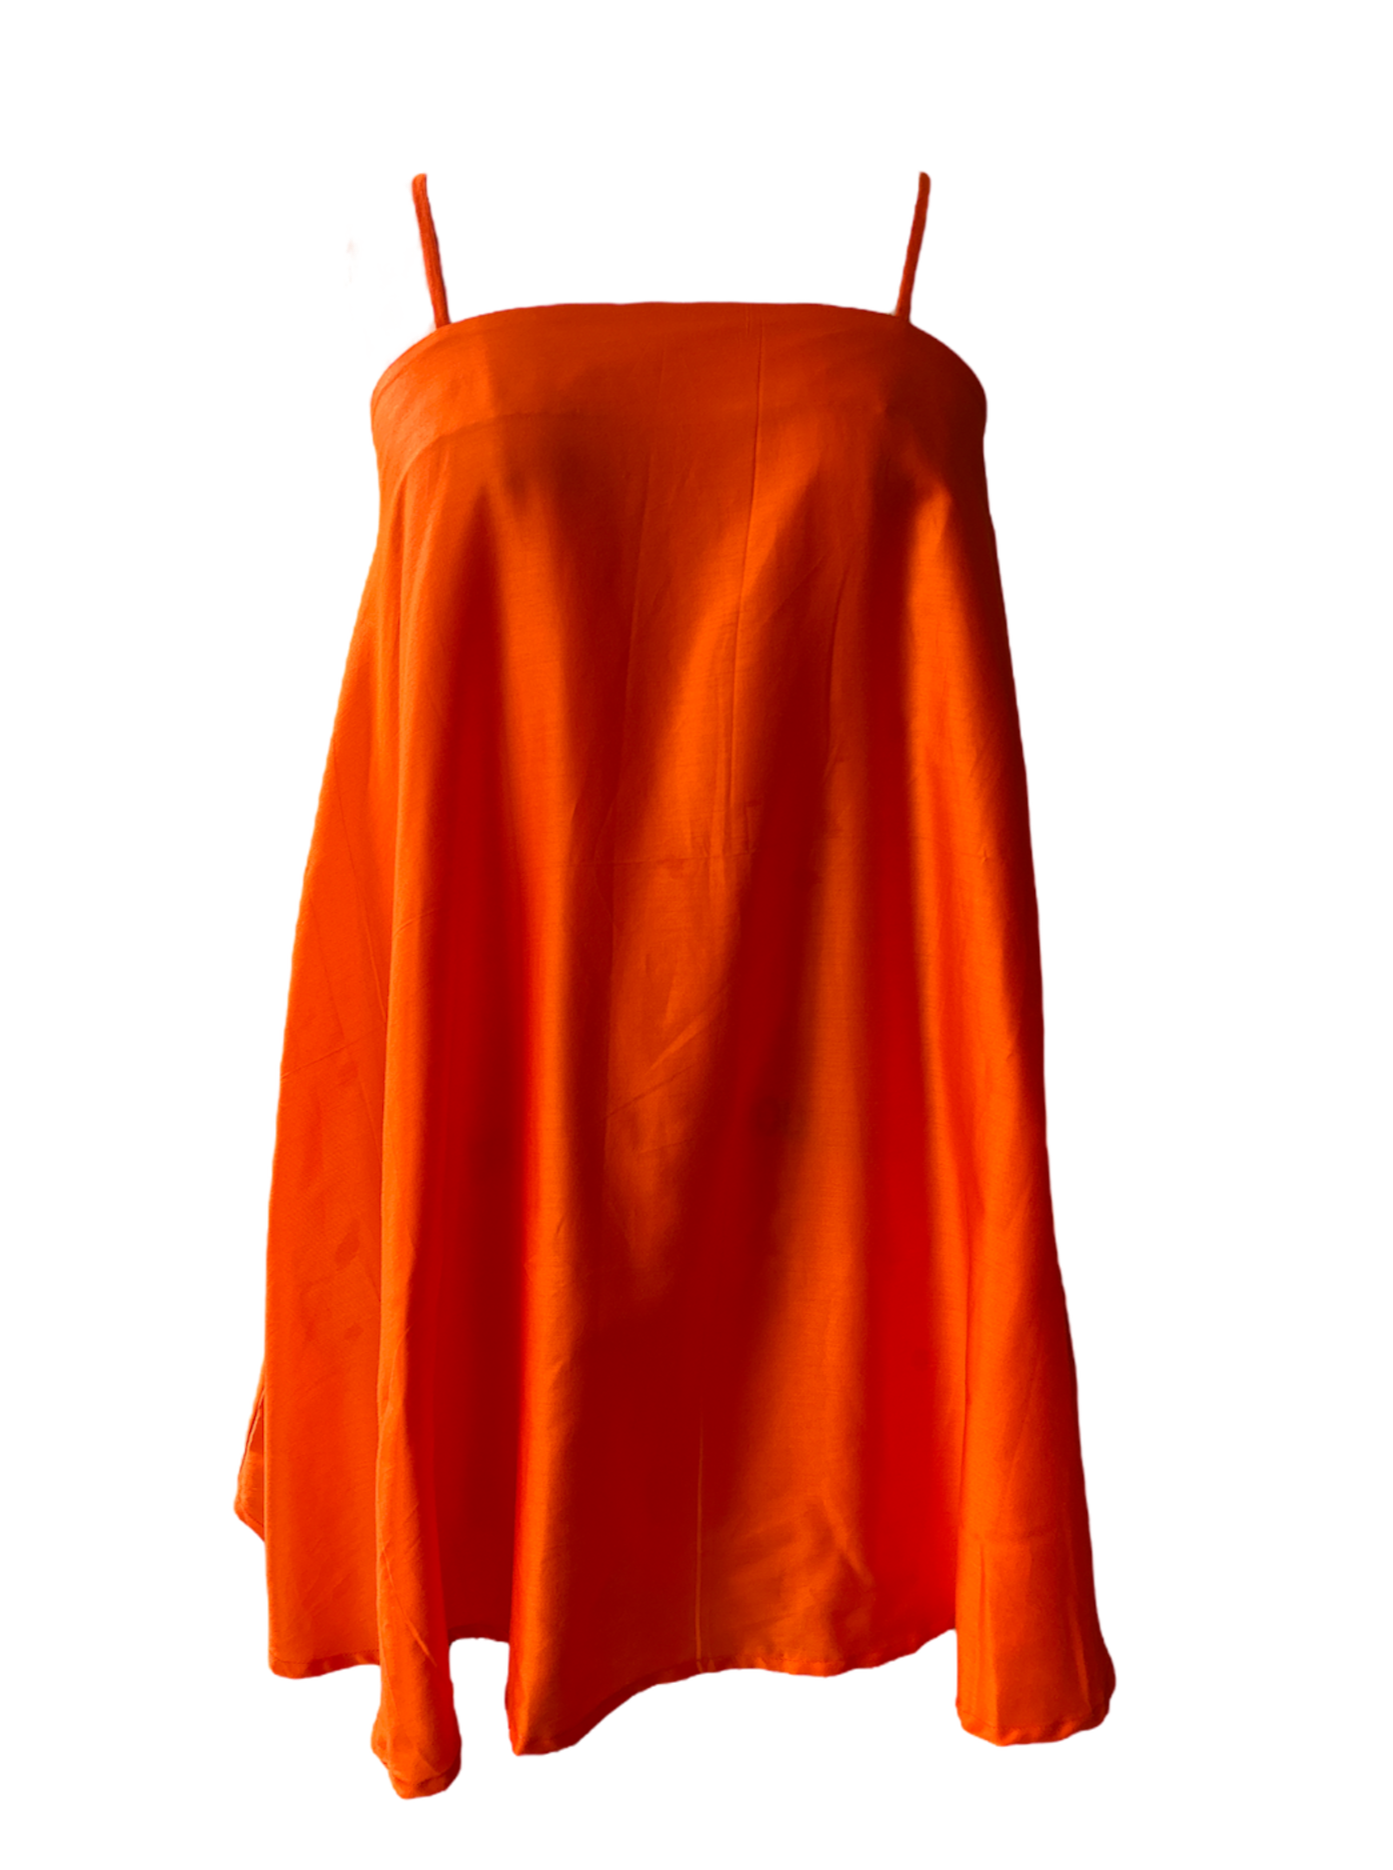 a vivid orange color flare tent spaghetti strap dress from adrina fanore